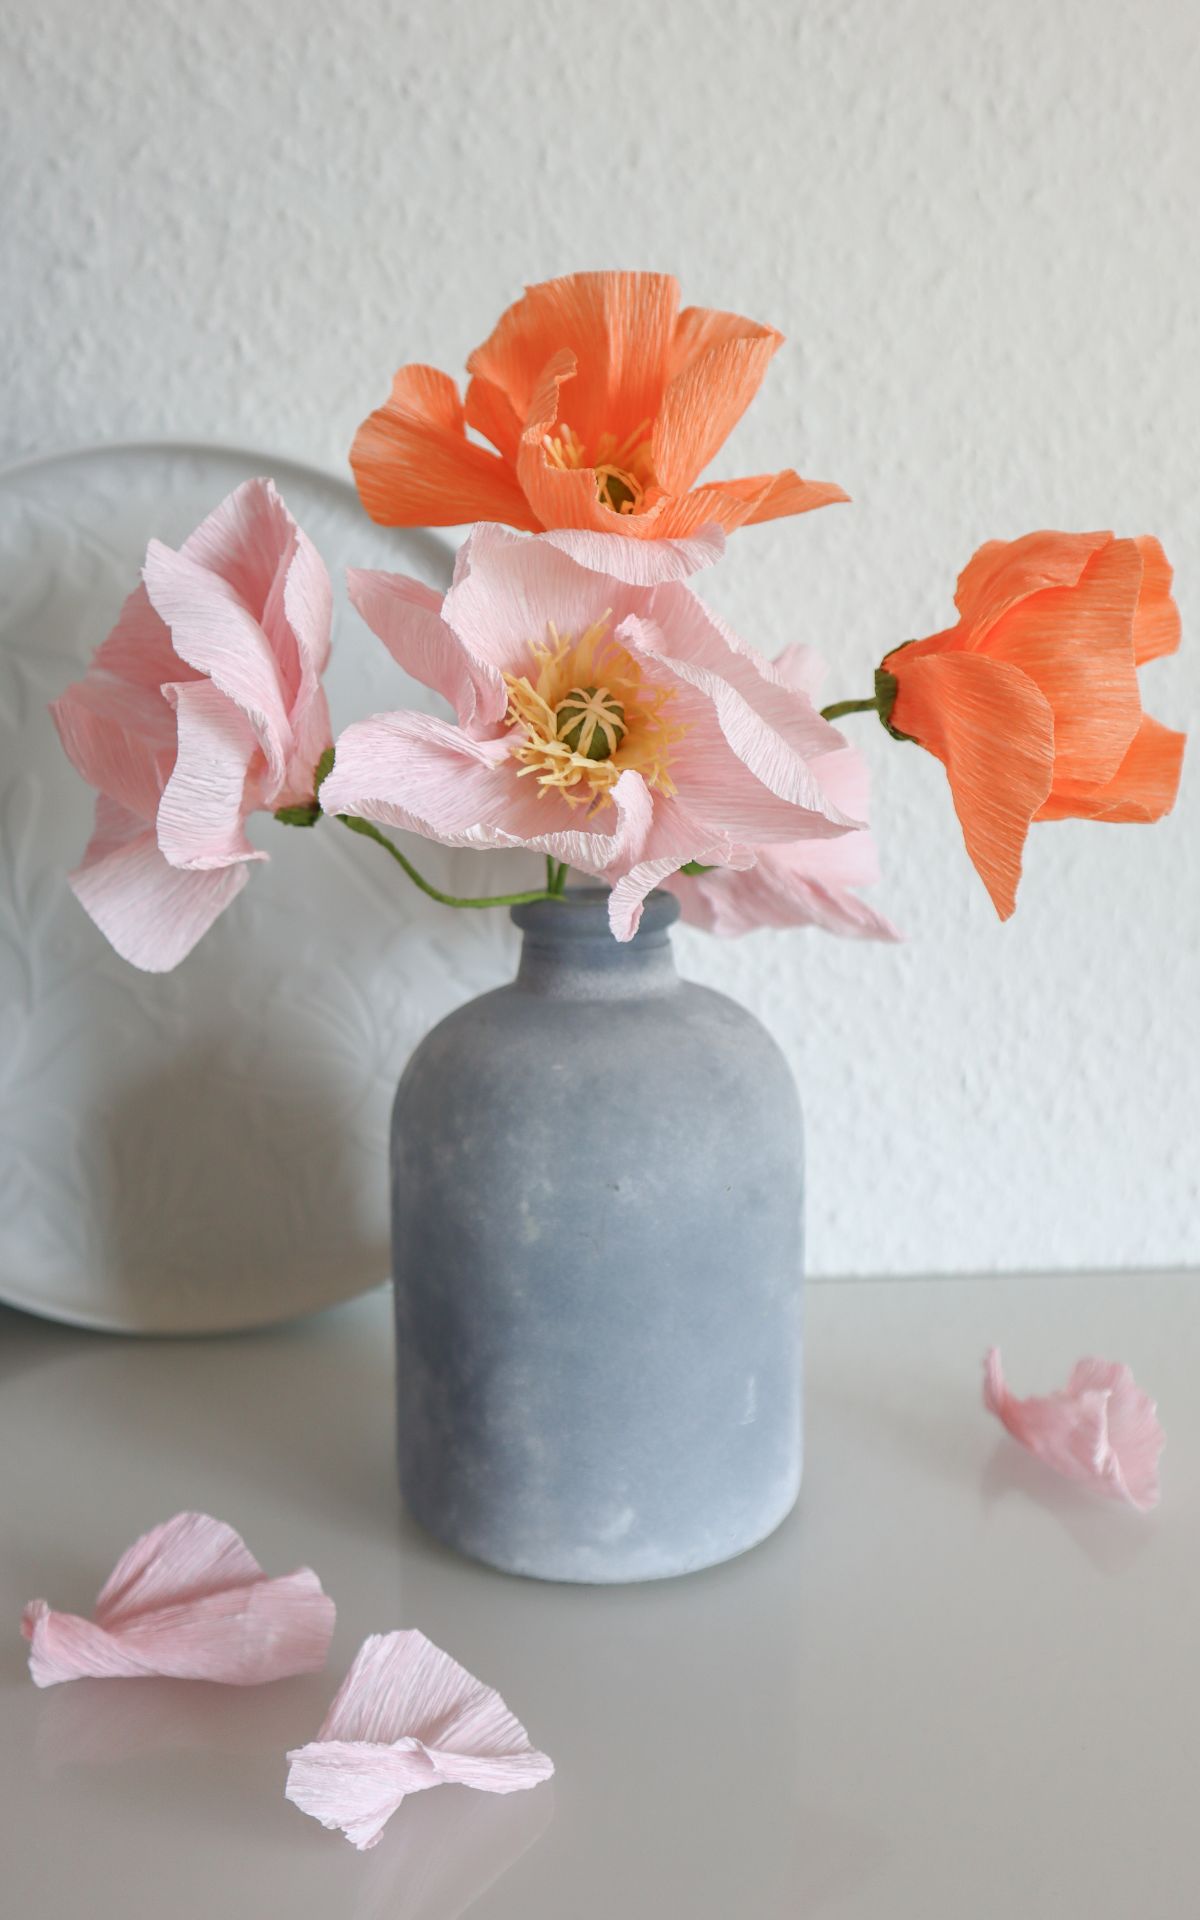 Papierblumen basteln: So kannst du wunderschöne Mohn-Blumen aus Papier ganz leicht selber machen! Hier findest du meine DIY Anleitung für Papierblumen aus Krepp (bekannt aus dem ARD Buffet) inkl. Vorlagen.